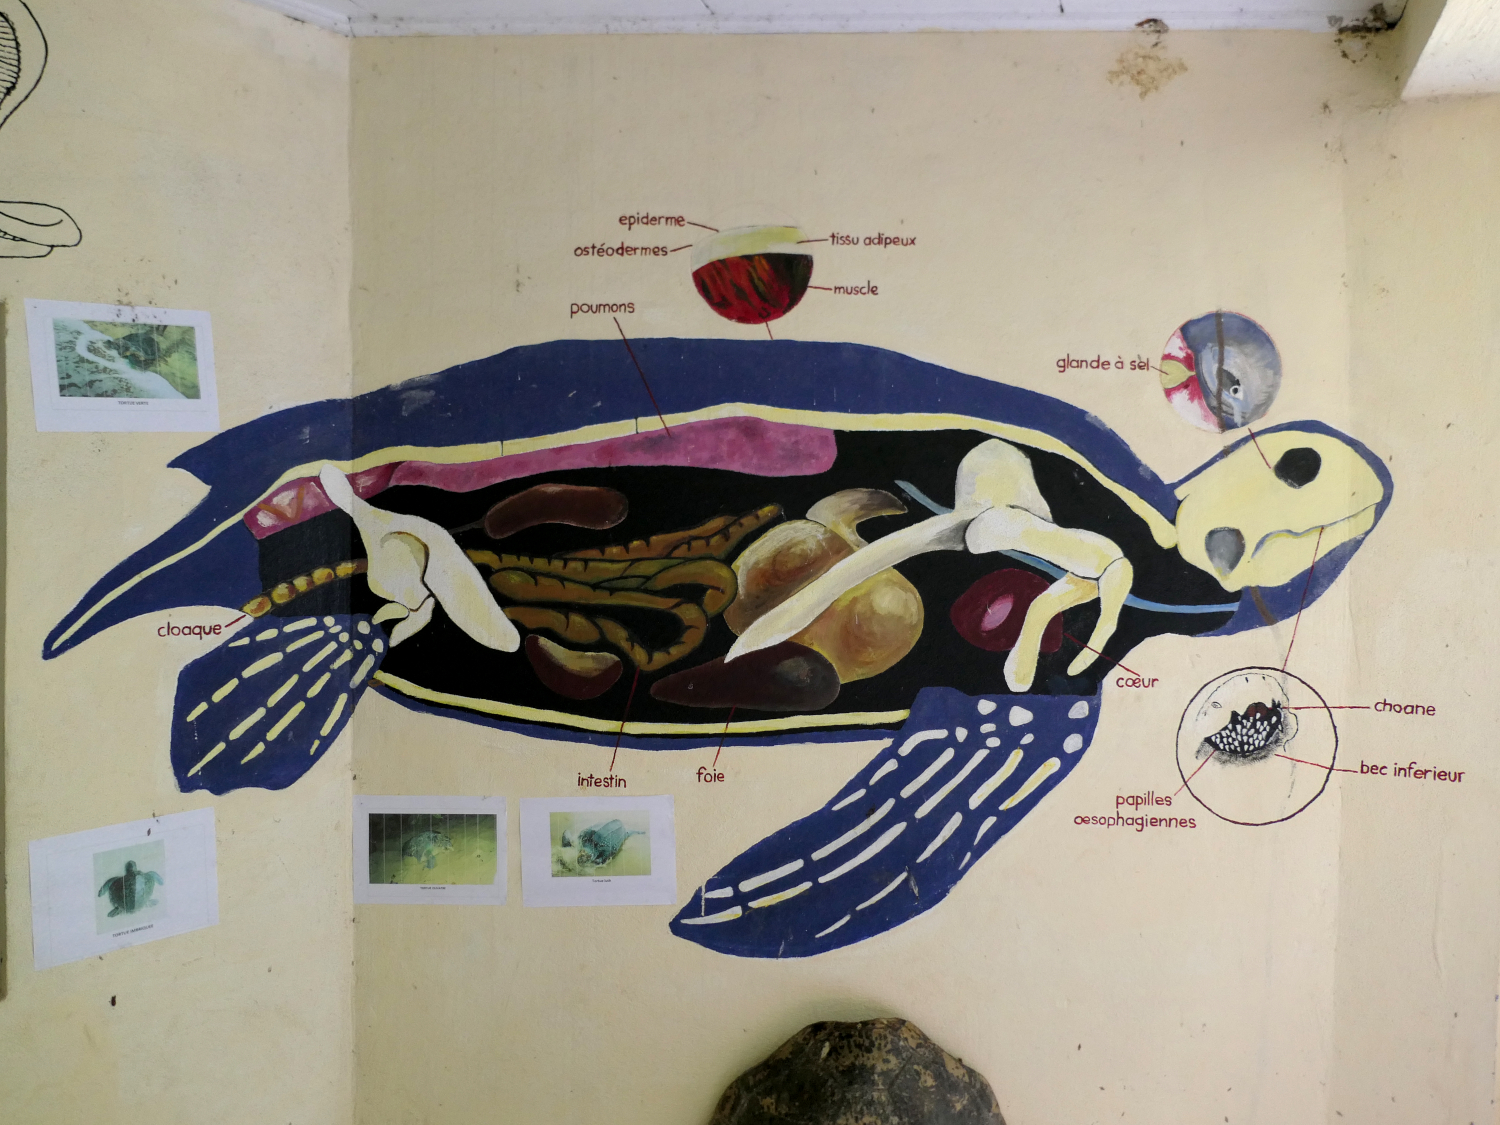 La tortue luth dessinée sur le mur du petit musée de l’association Tube awu est la plus grande tortue marine du monde